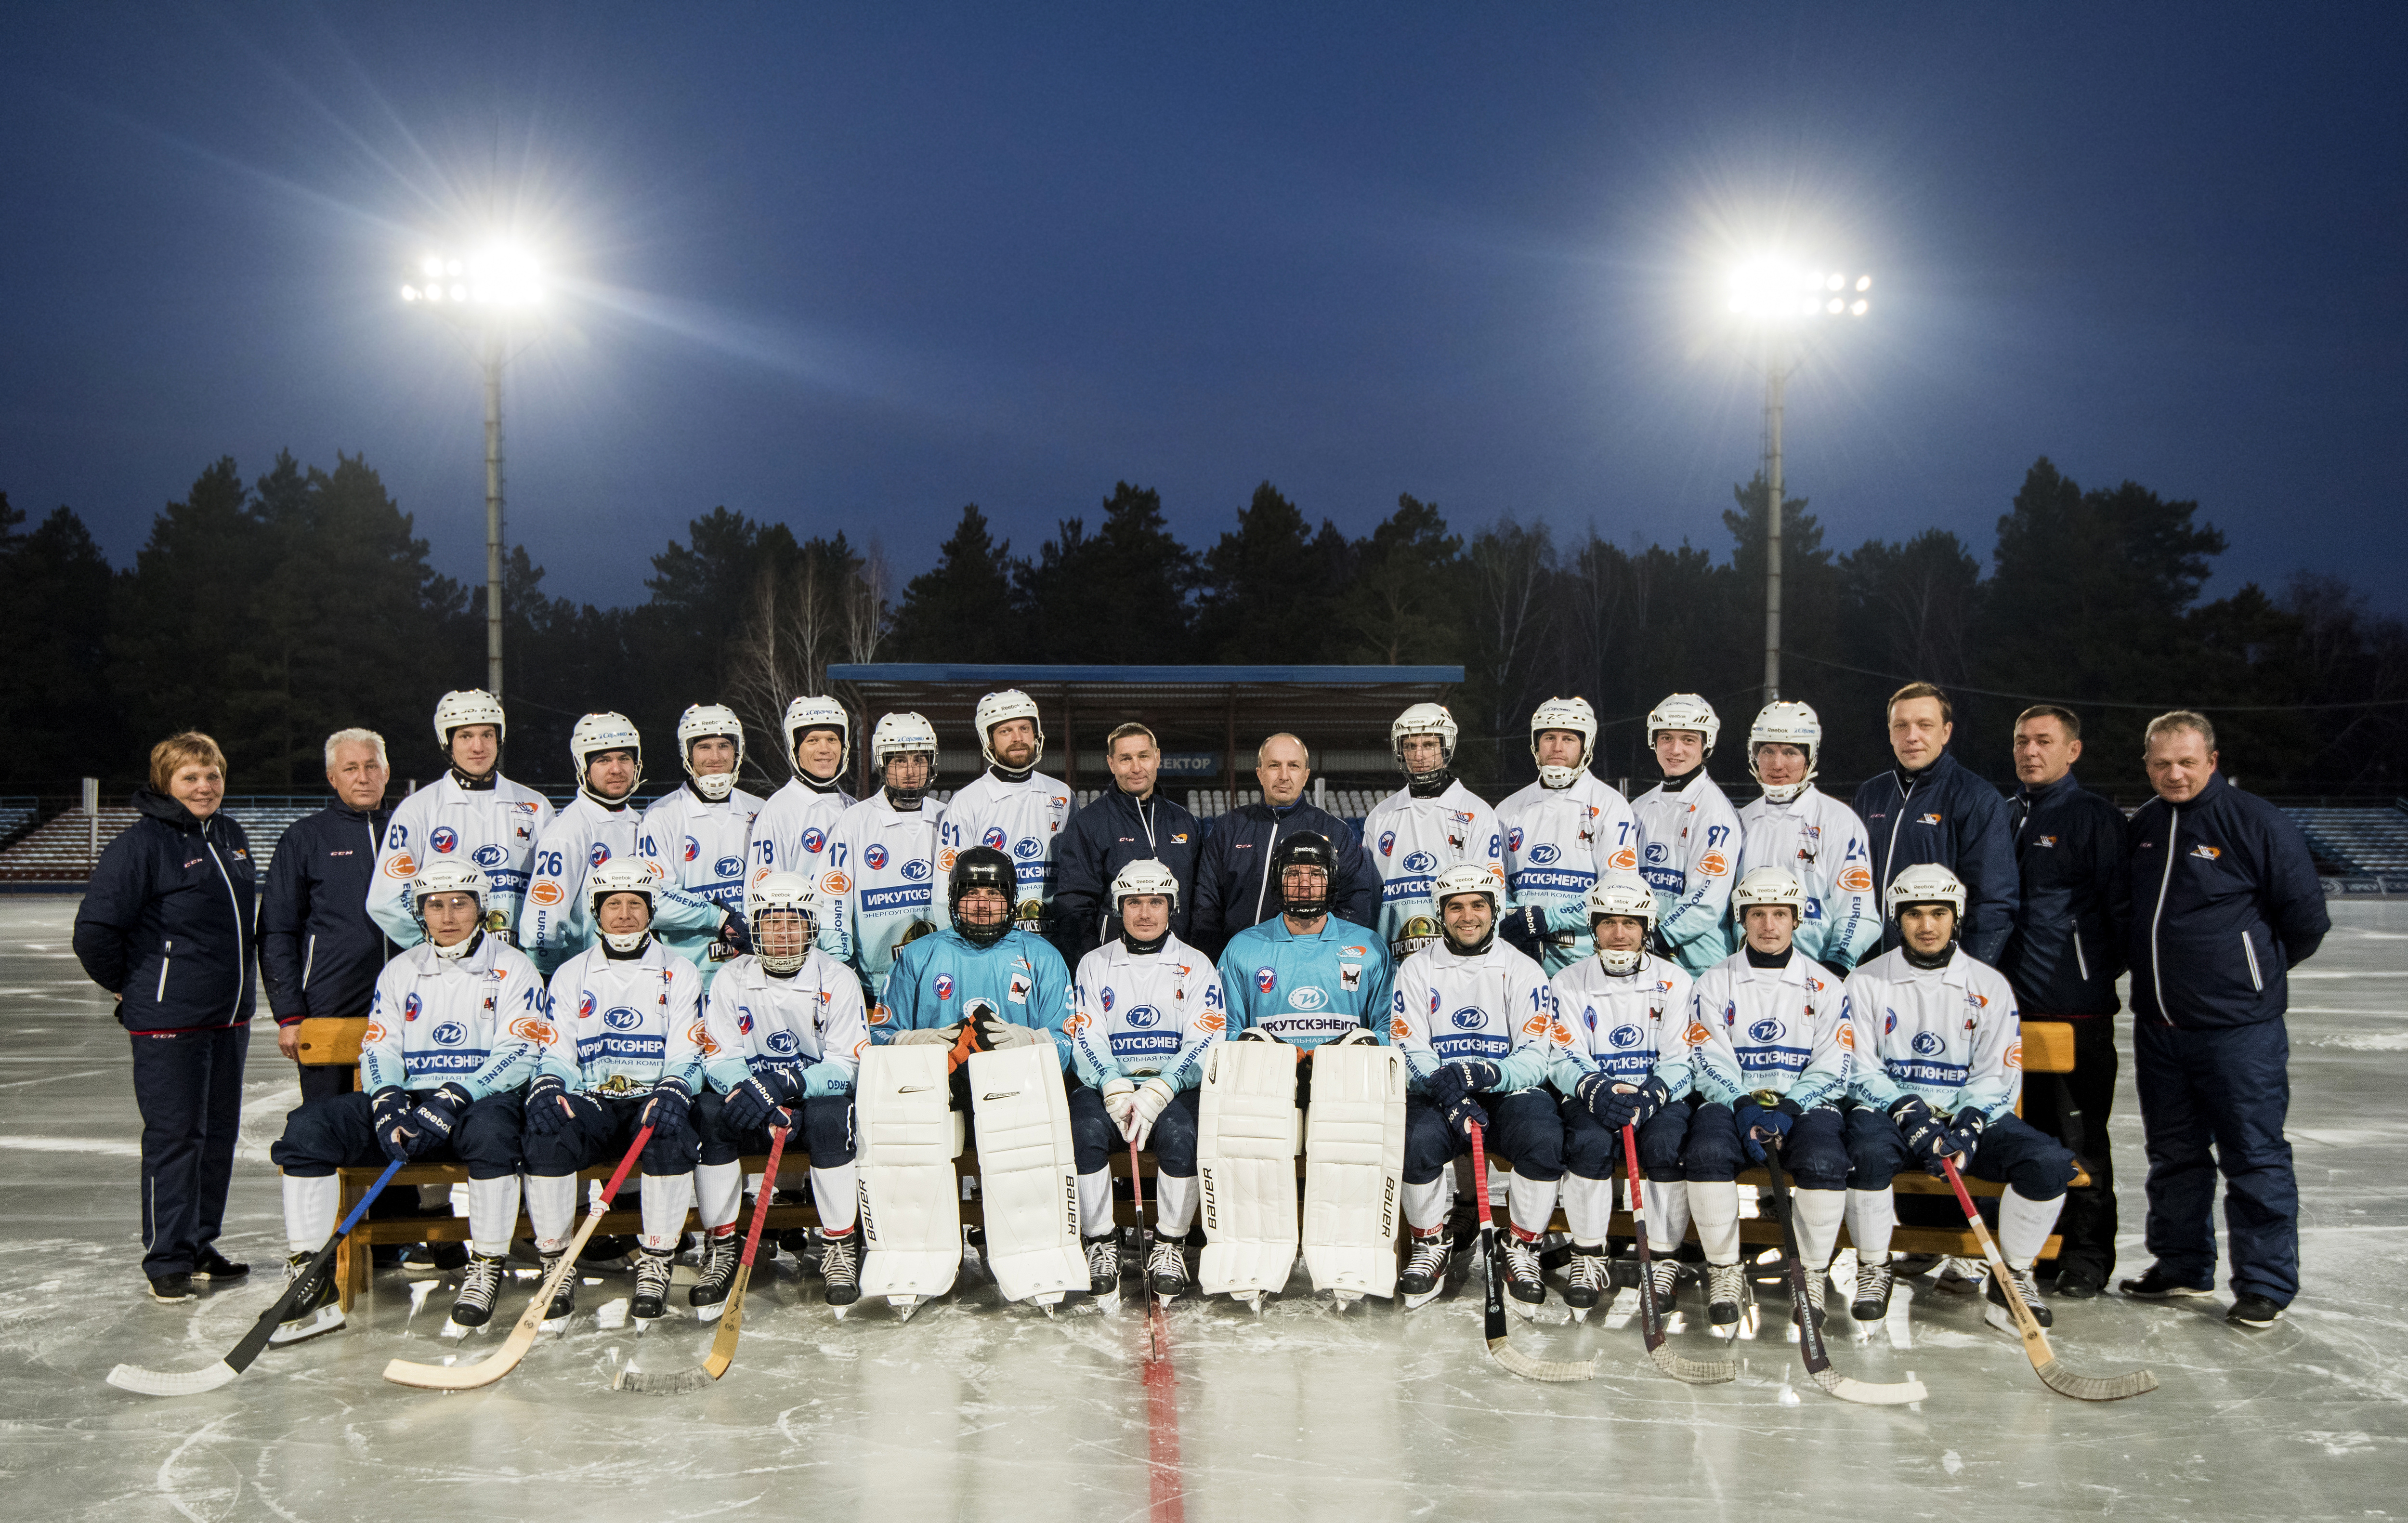 Сайт хоккейной команды. Хоккей с мячом Байкал энергия. Хоккейная команда Иркутск. Хоккейный клуб Байкал энергия. Байкал хоккей Иркутск.